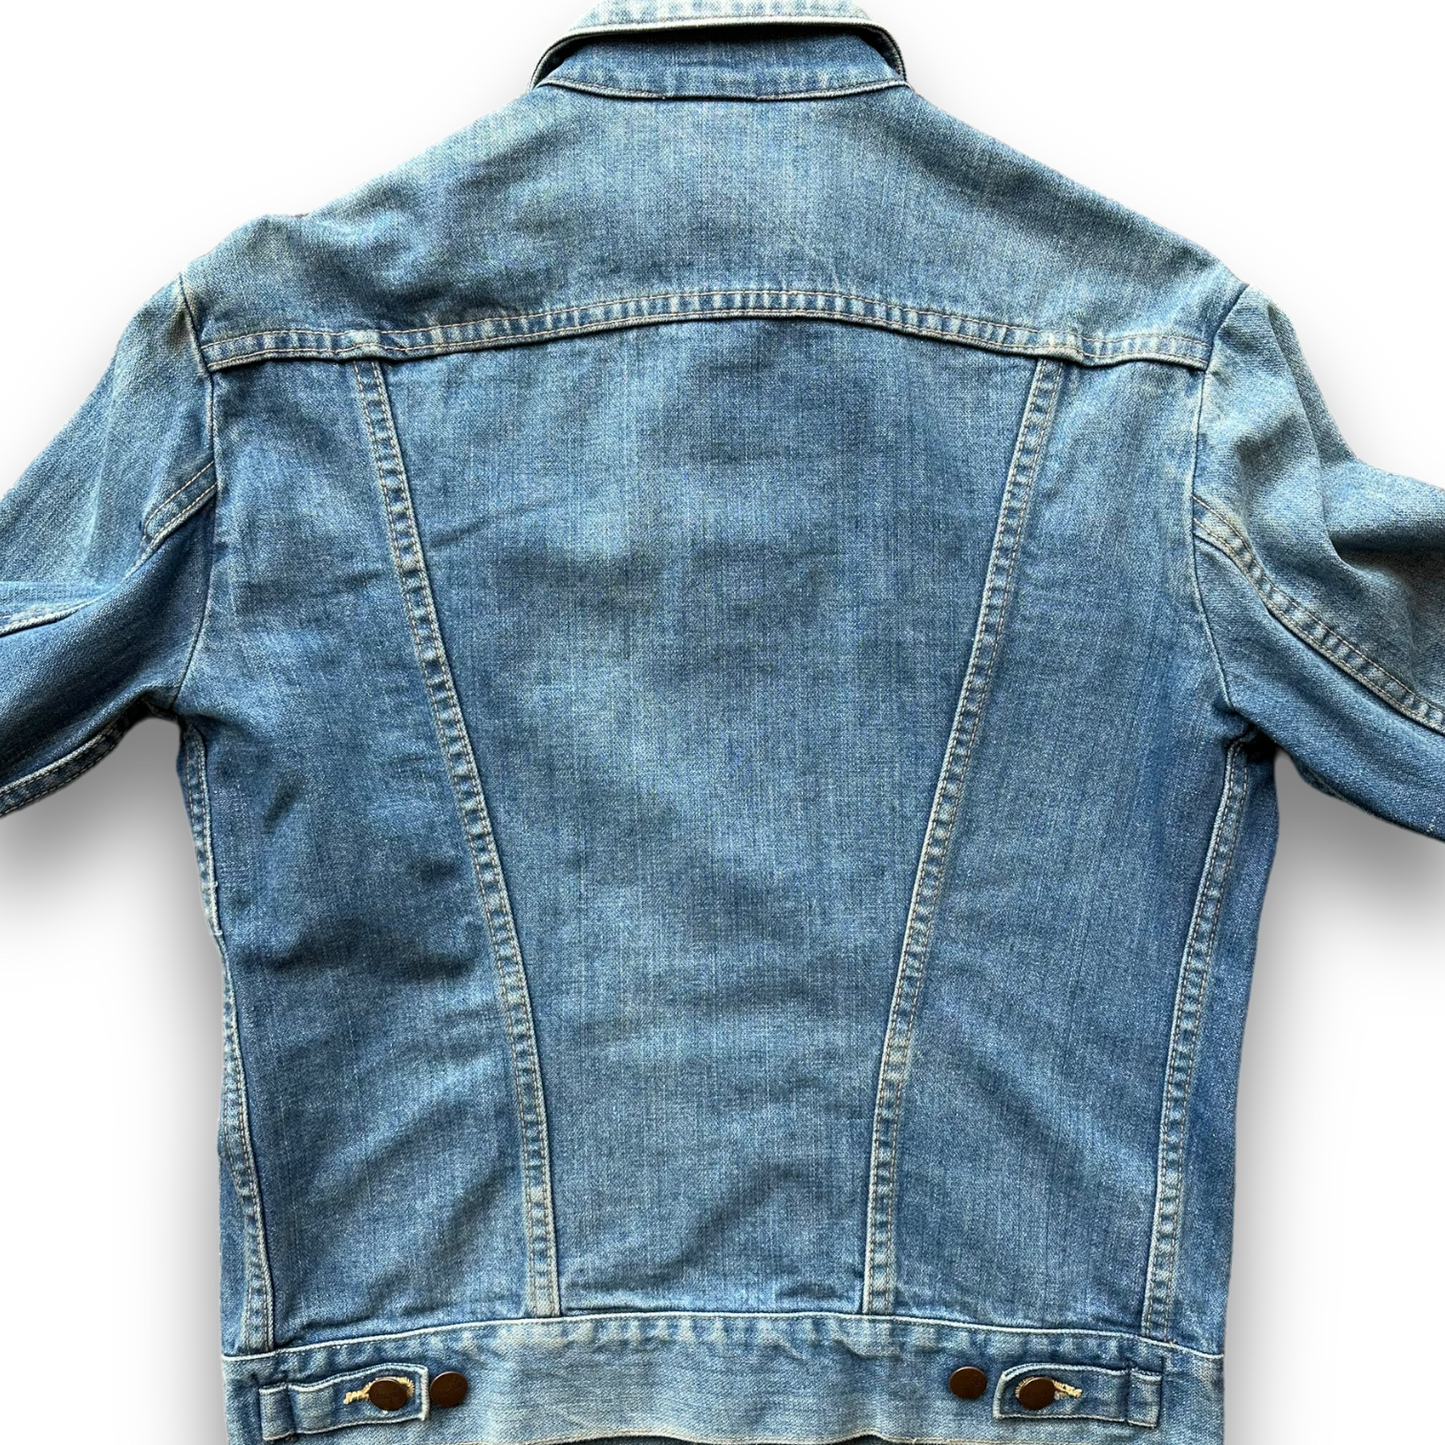 Vintage Wrangler Denim Jacket - S